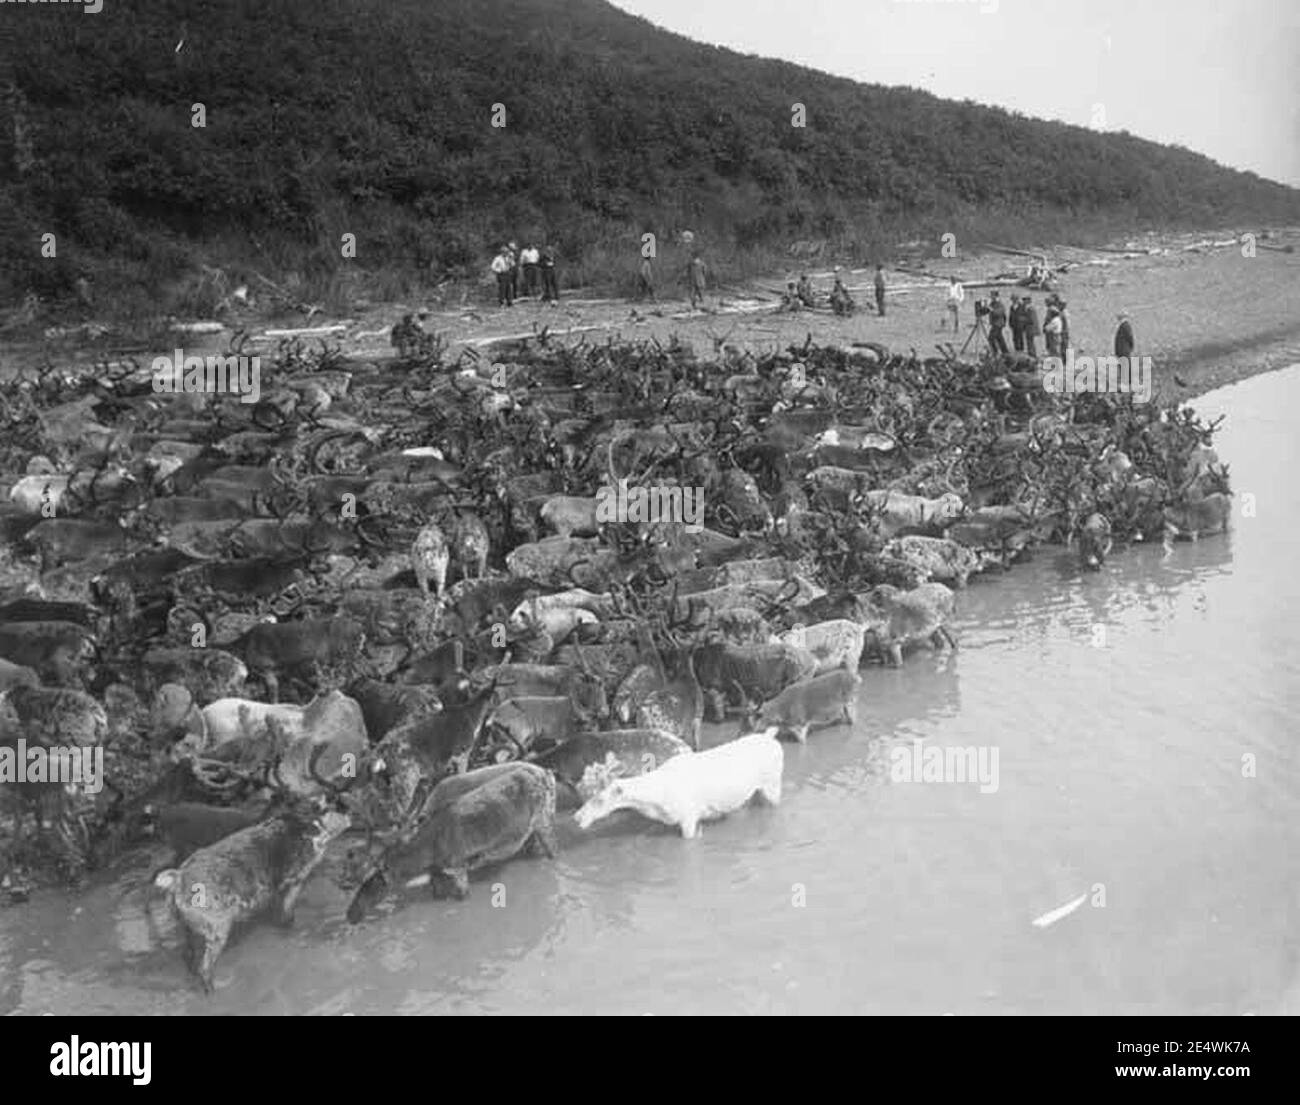 Hommes photographiant le renne le long du rivage, Mountain Village, vers 1914 Banque D'Images